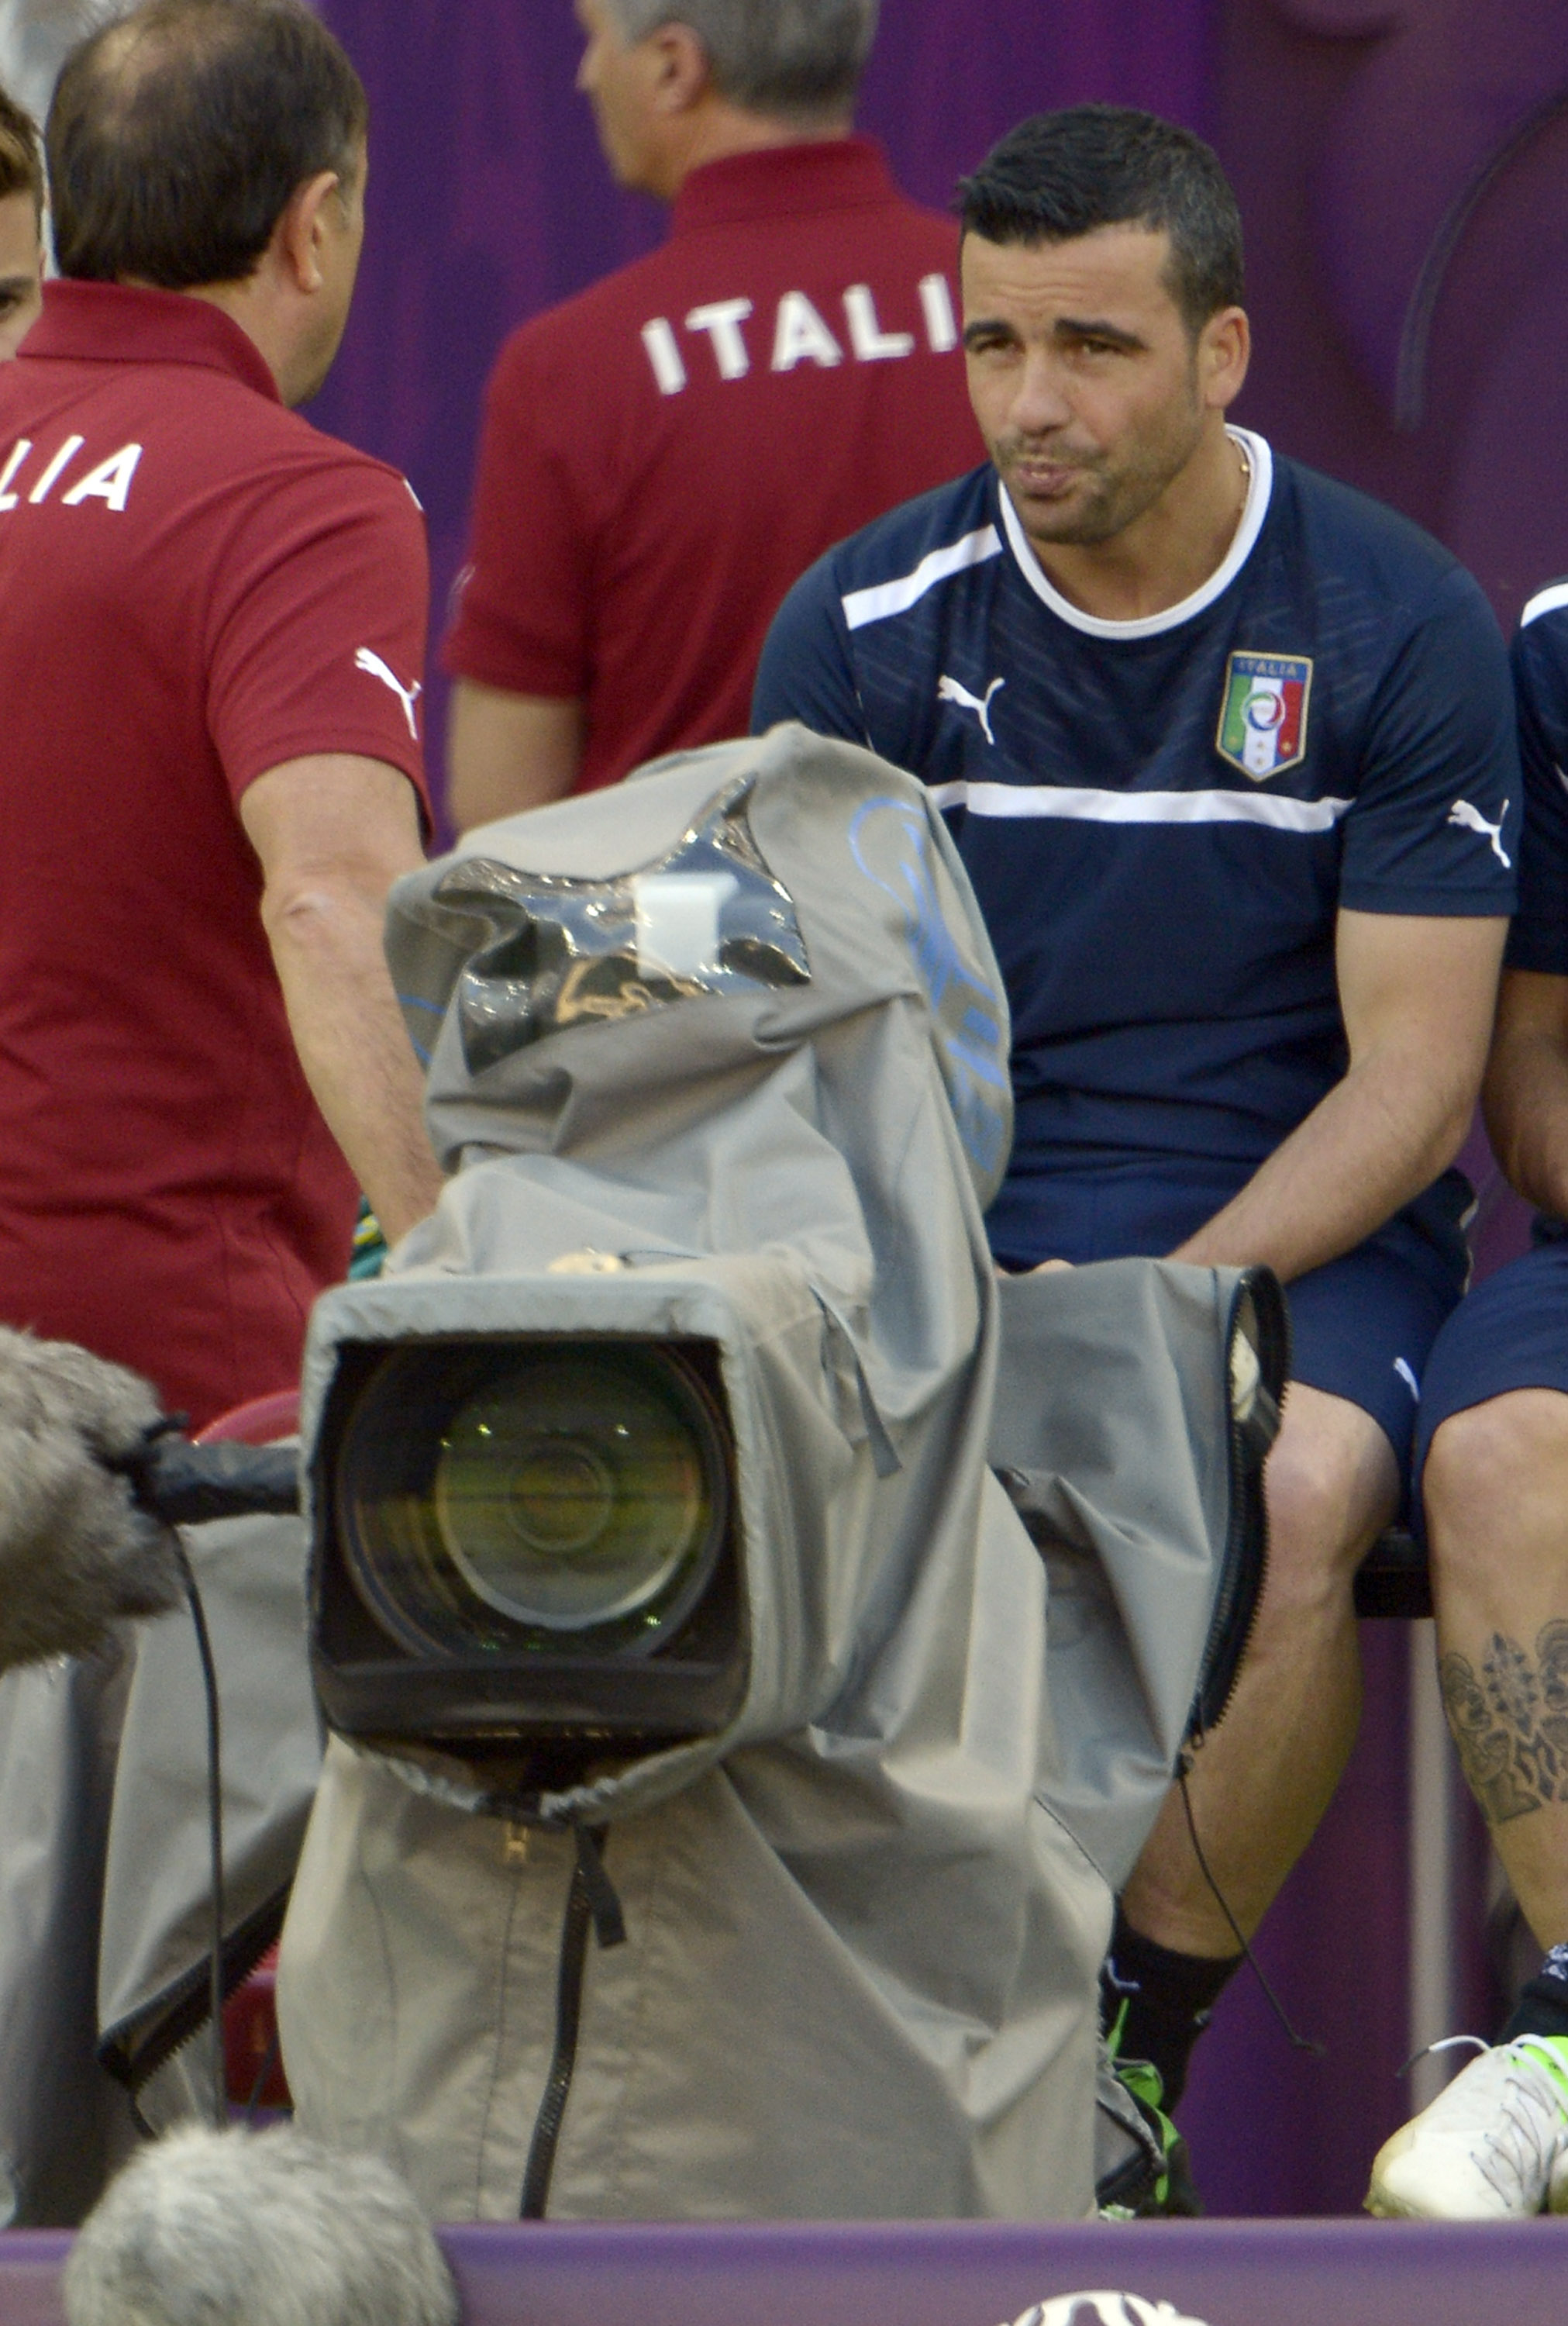 Di Natale, som inte har fått mycket speltid under EM, verkar fundera på om han kan få spela några minuter i morgon.